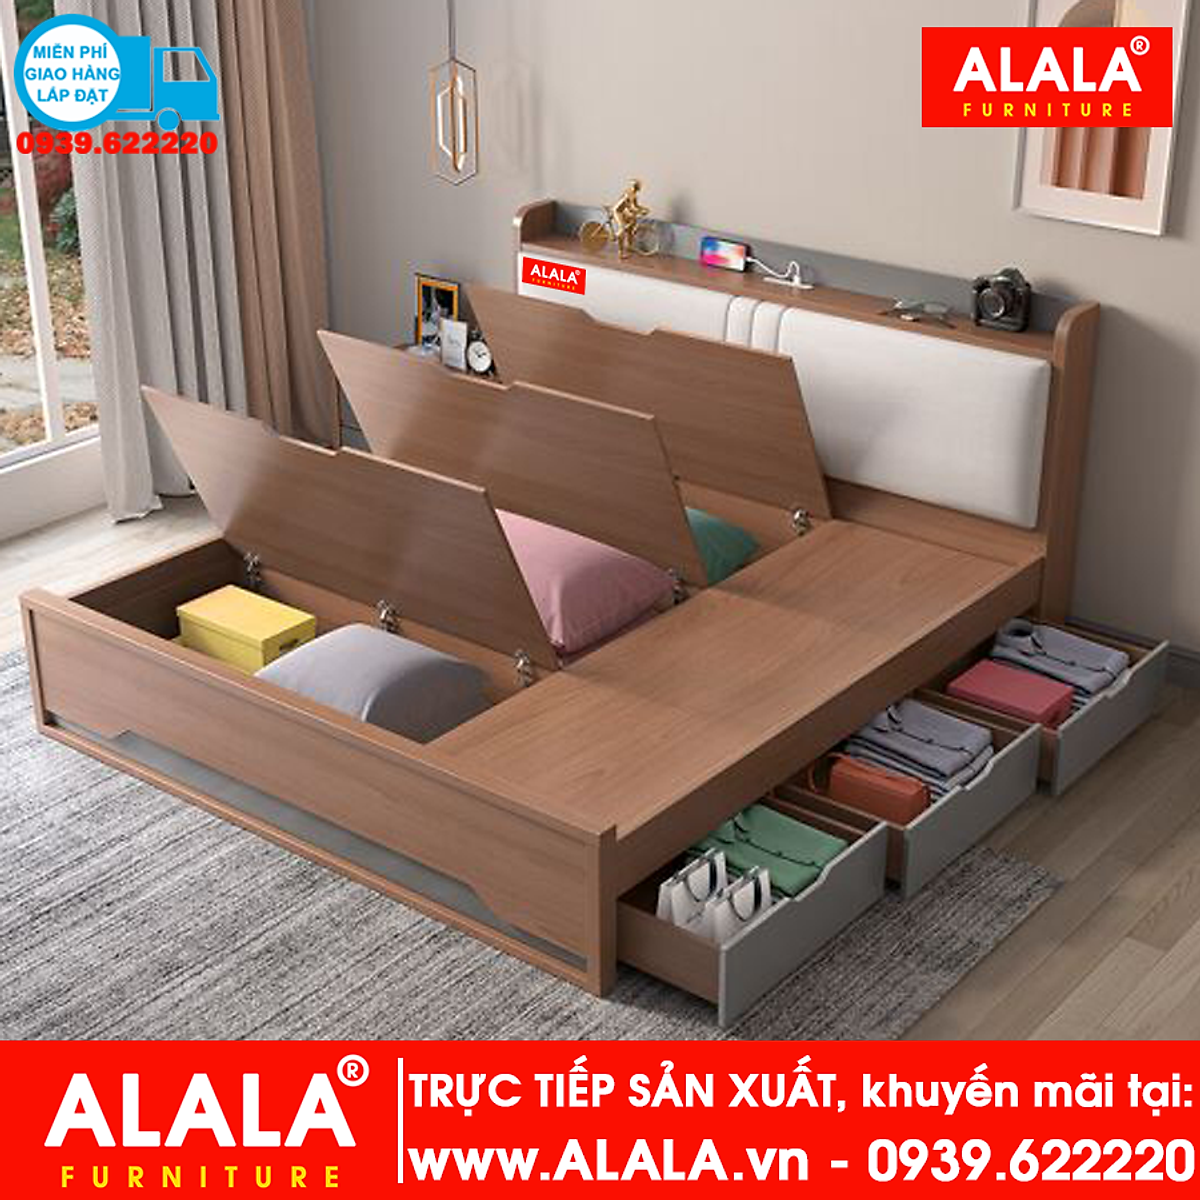 Giường ngủ ALALA13 gỗ HMR chống nước - www.ALALA.vn® - Za.lo ...